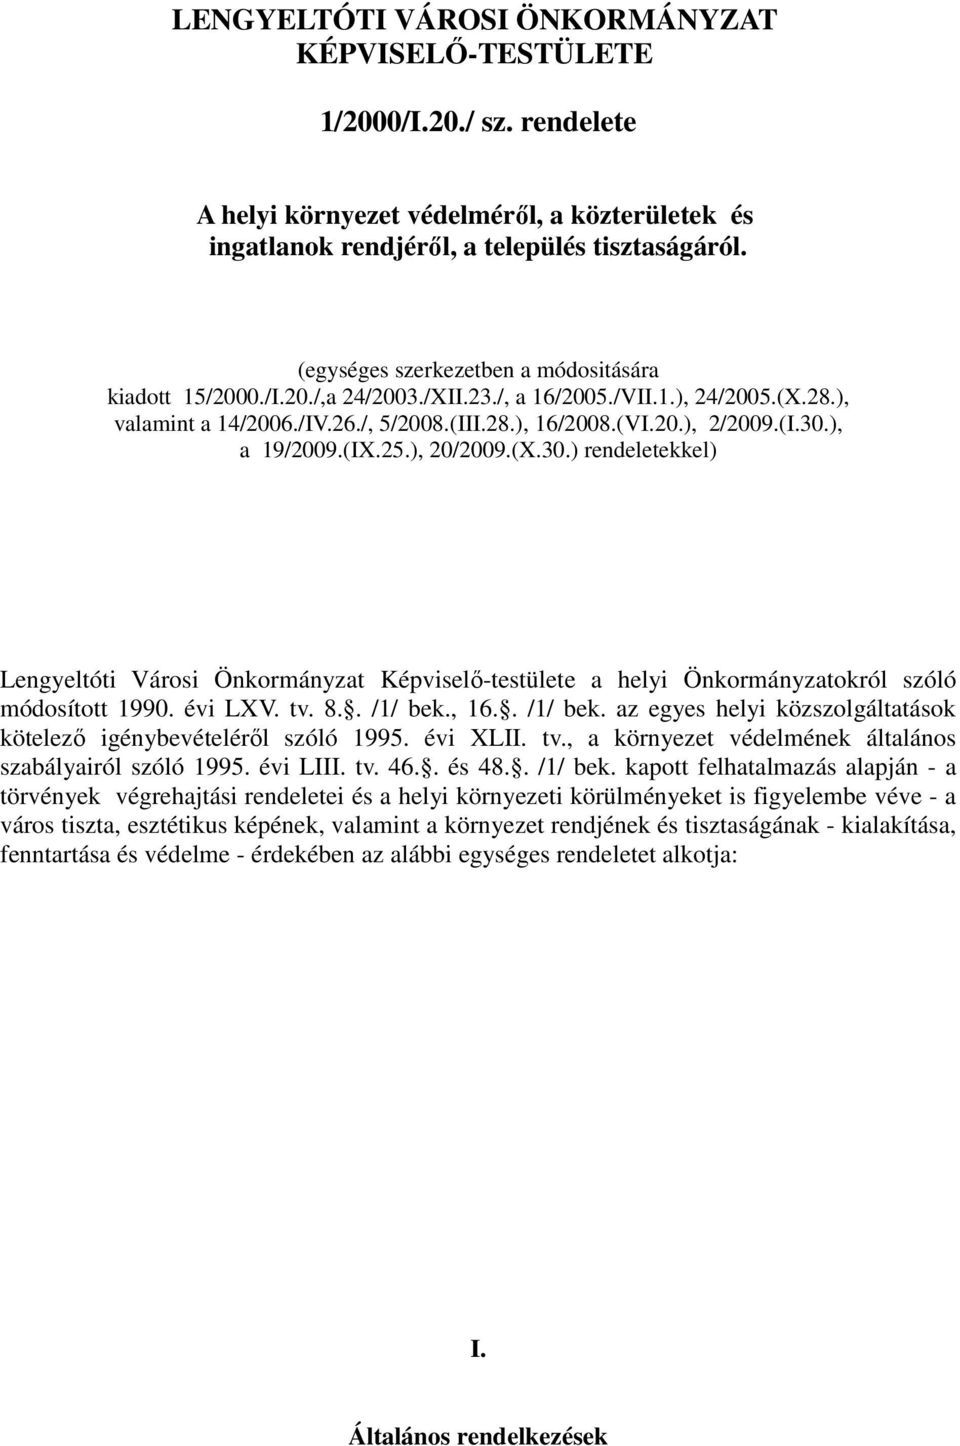 ), a 19/2009.(IX.25.), 20/2009.(X.30.) rendeletekkel) Lengyeltóti Városi Önkormányzat Képviselı-testülete a helyi Önkormányzatokról szóló módosított 1990. évi LXV. tv. 8.. /1/ bek.